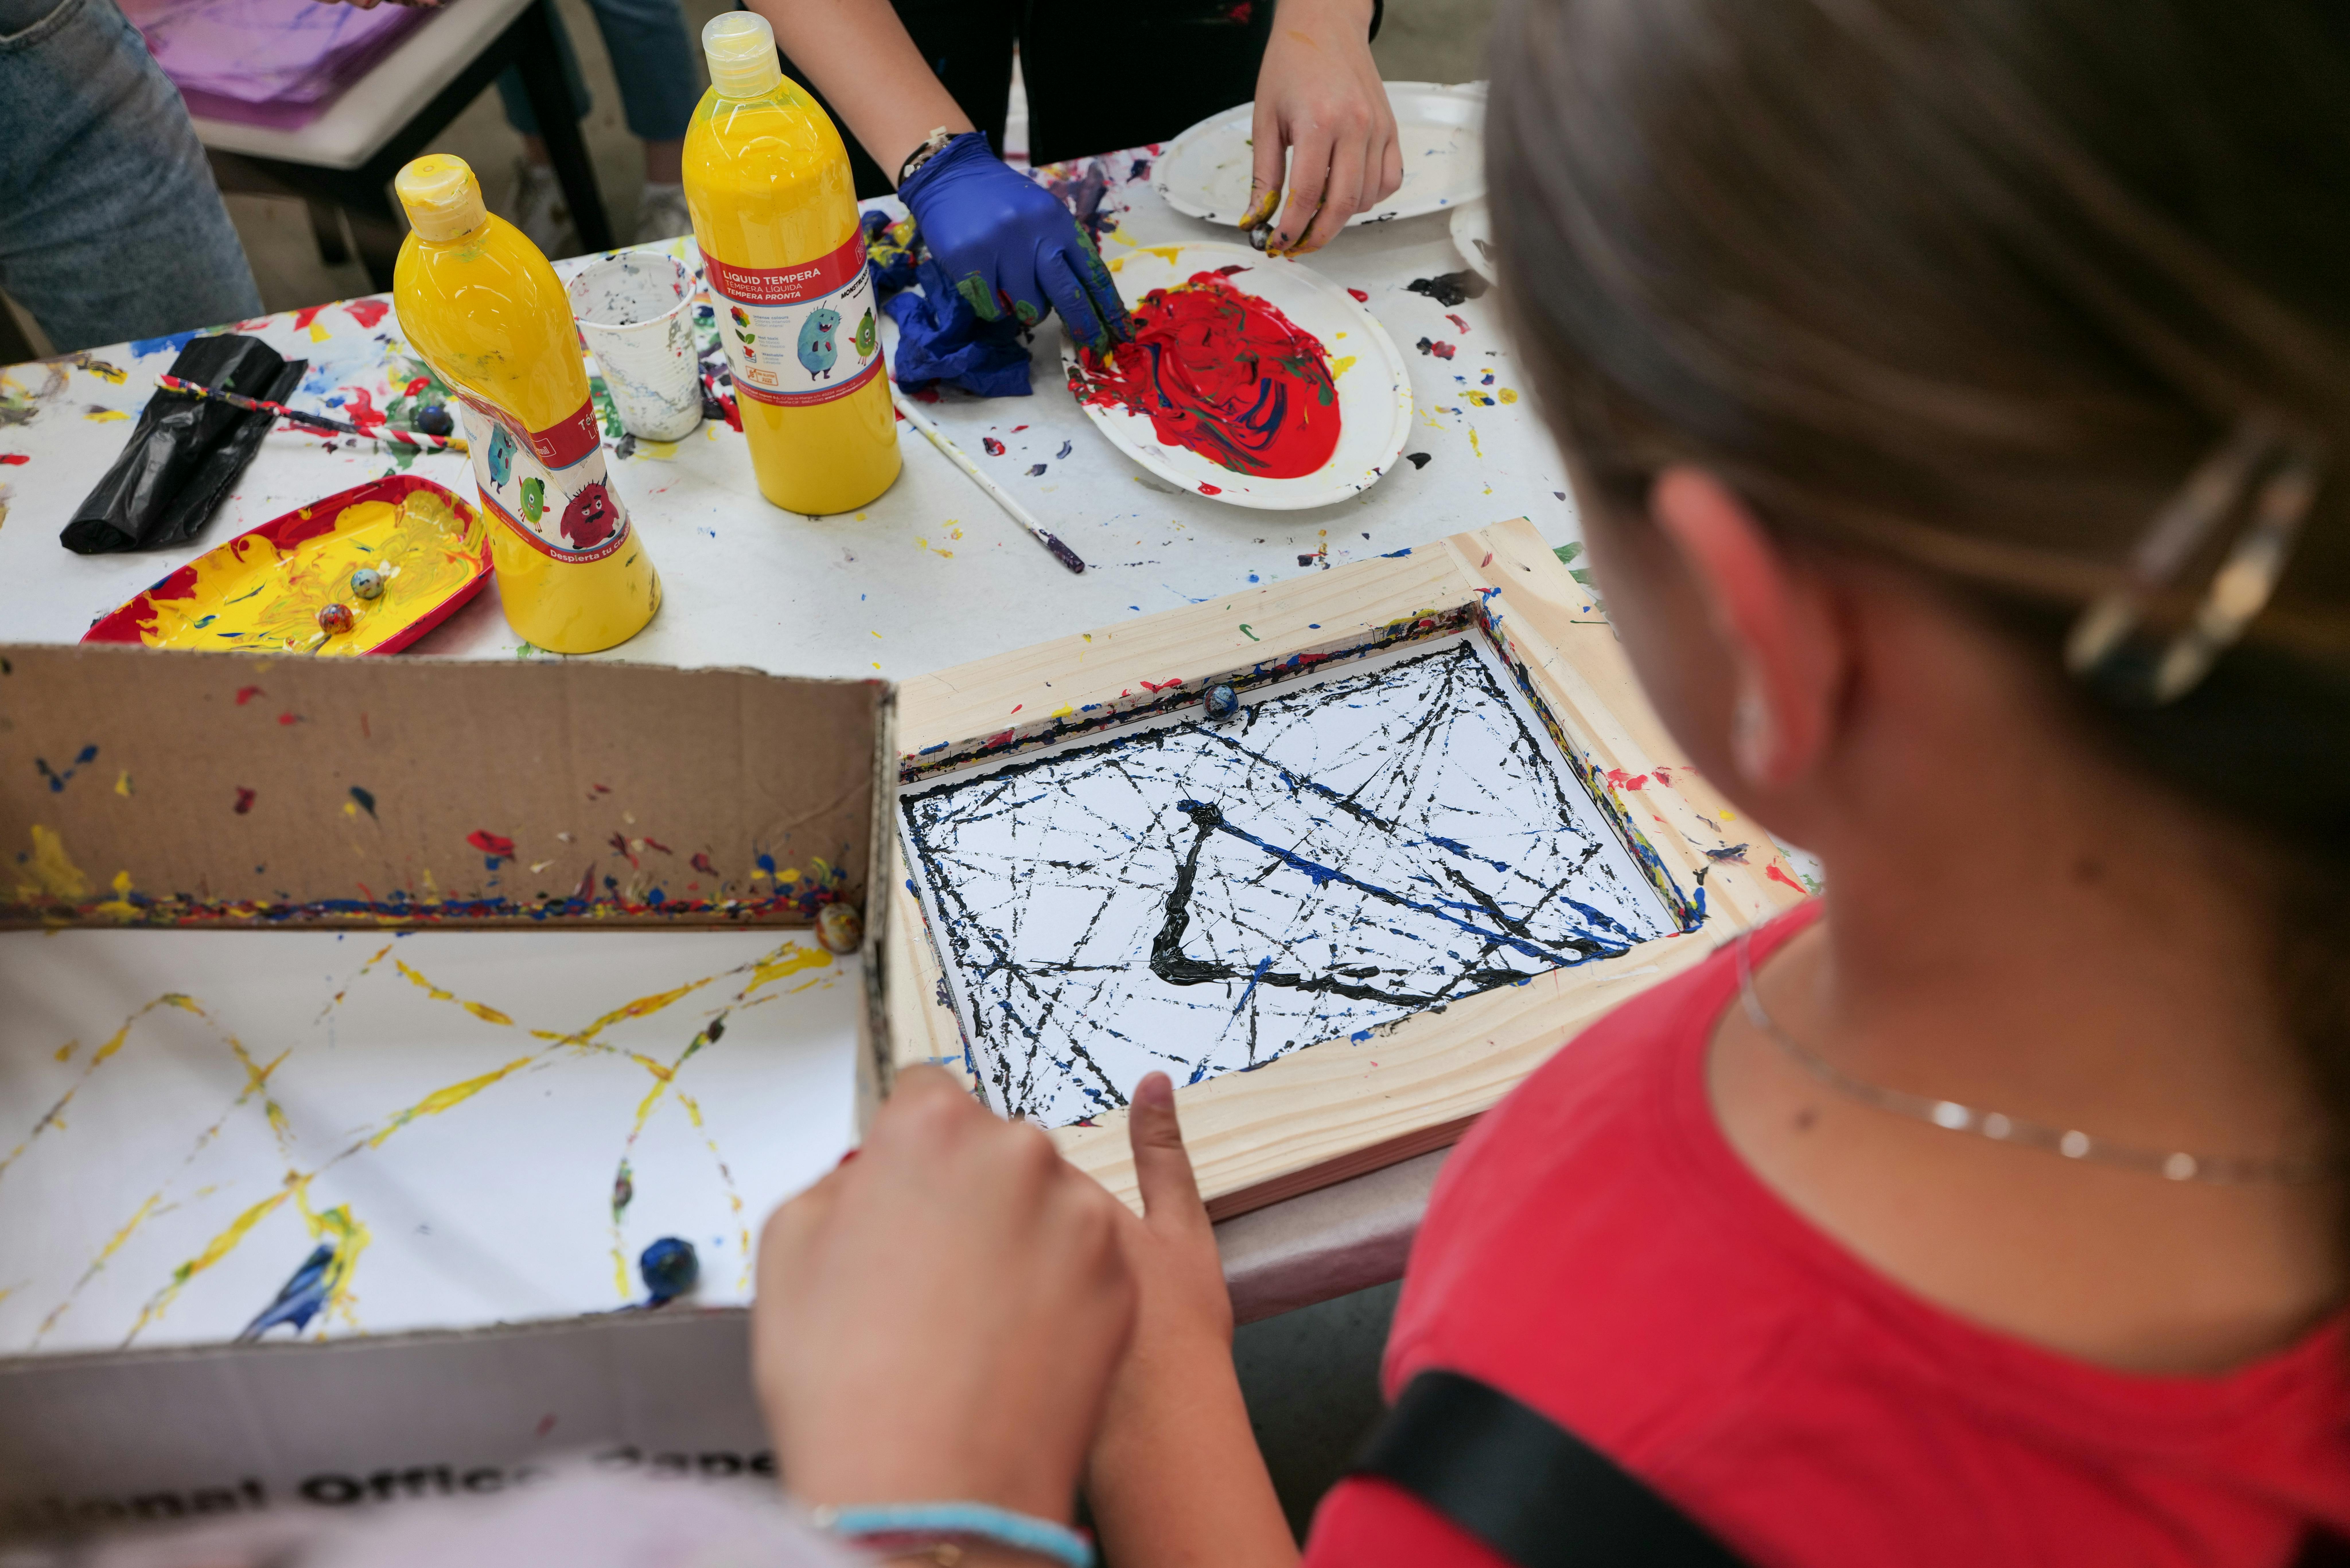 Fotografia en la que se observan a niños y niñas frente a una mesa de trabajo haciendo arte con pinturas